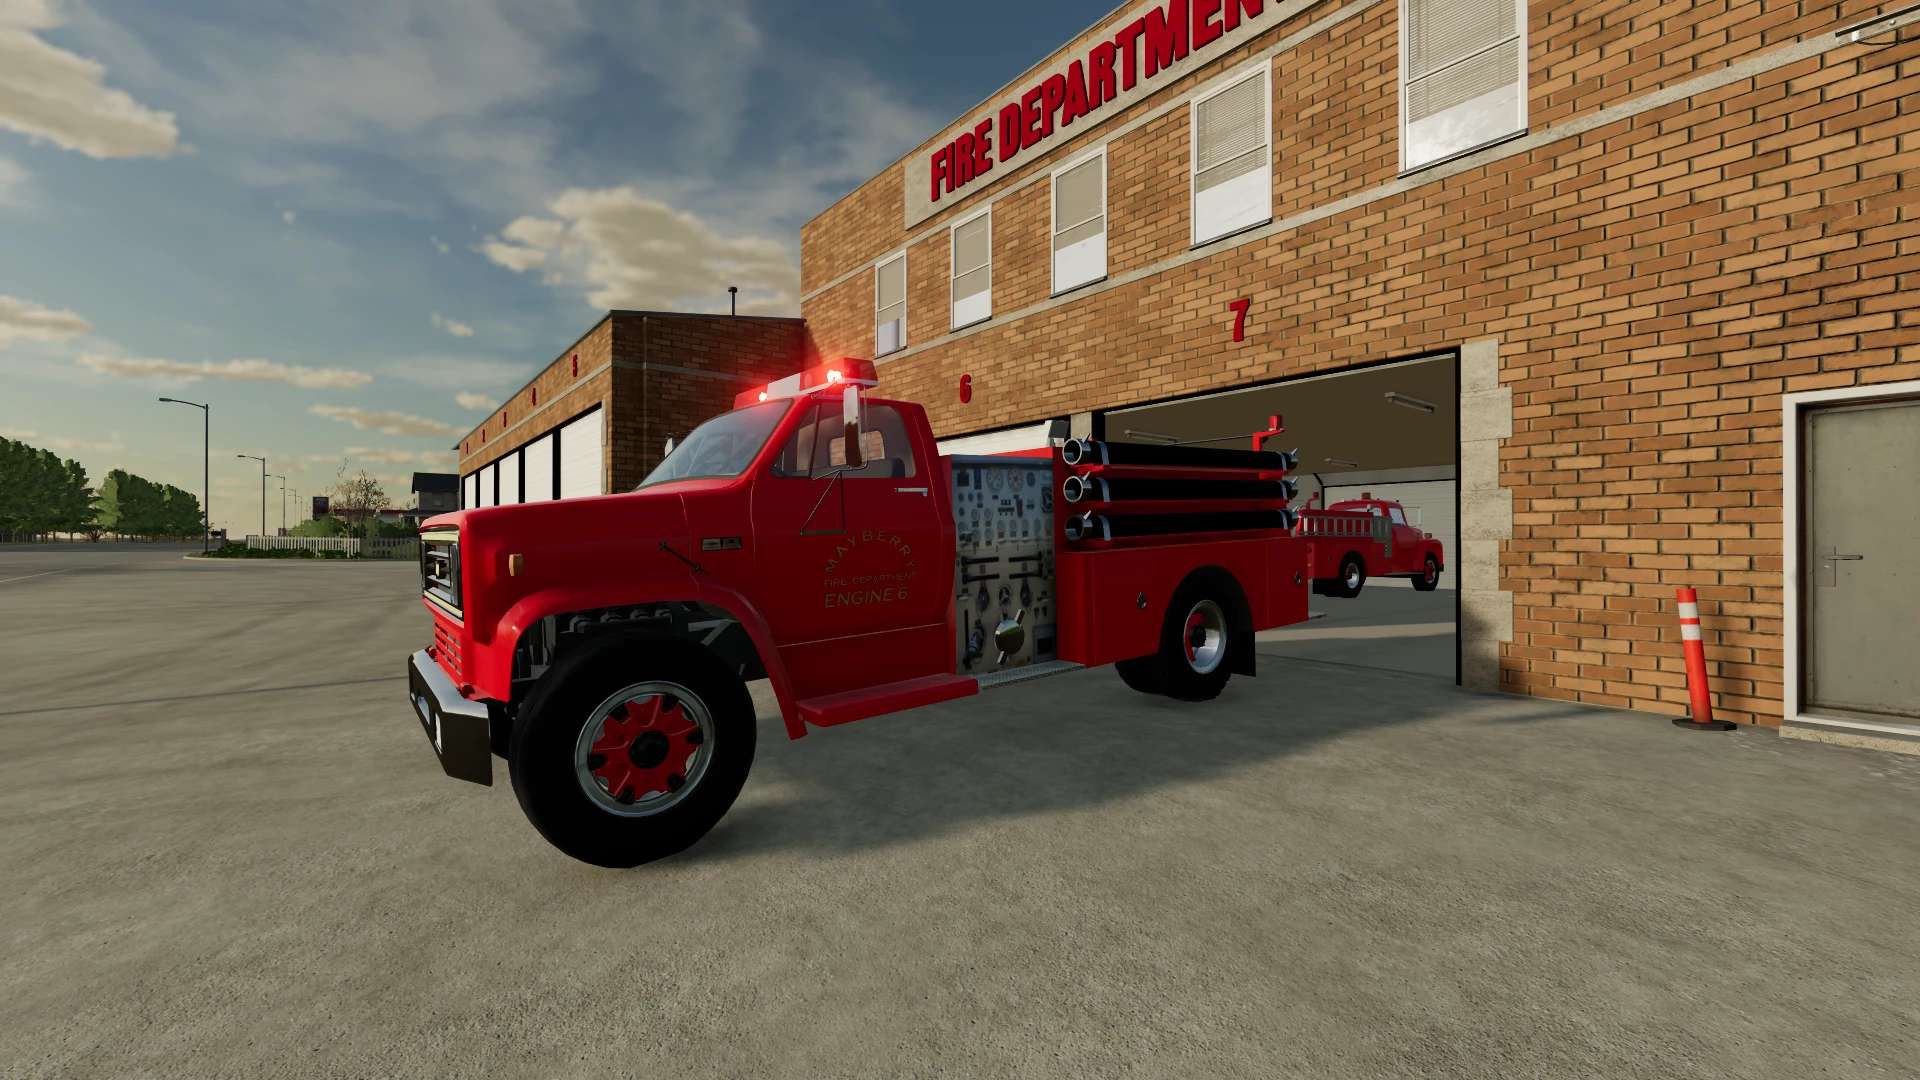 LS22,Fahrzeuge,Feuerwehr,,C70 Feuerwehrauto